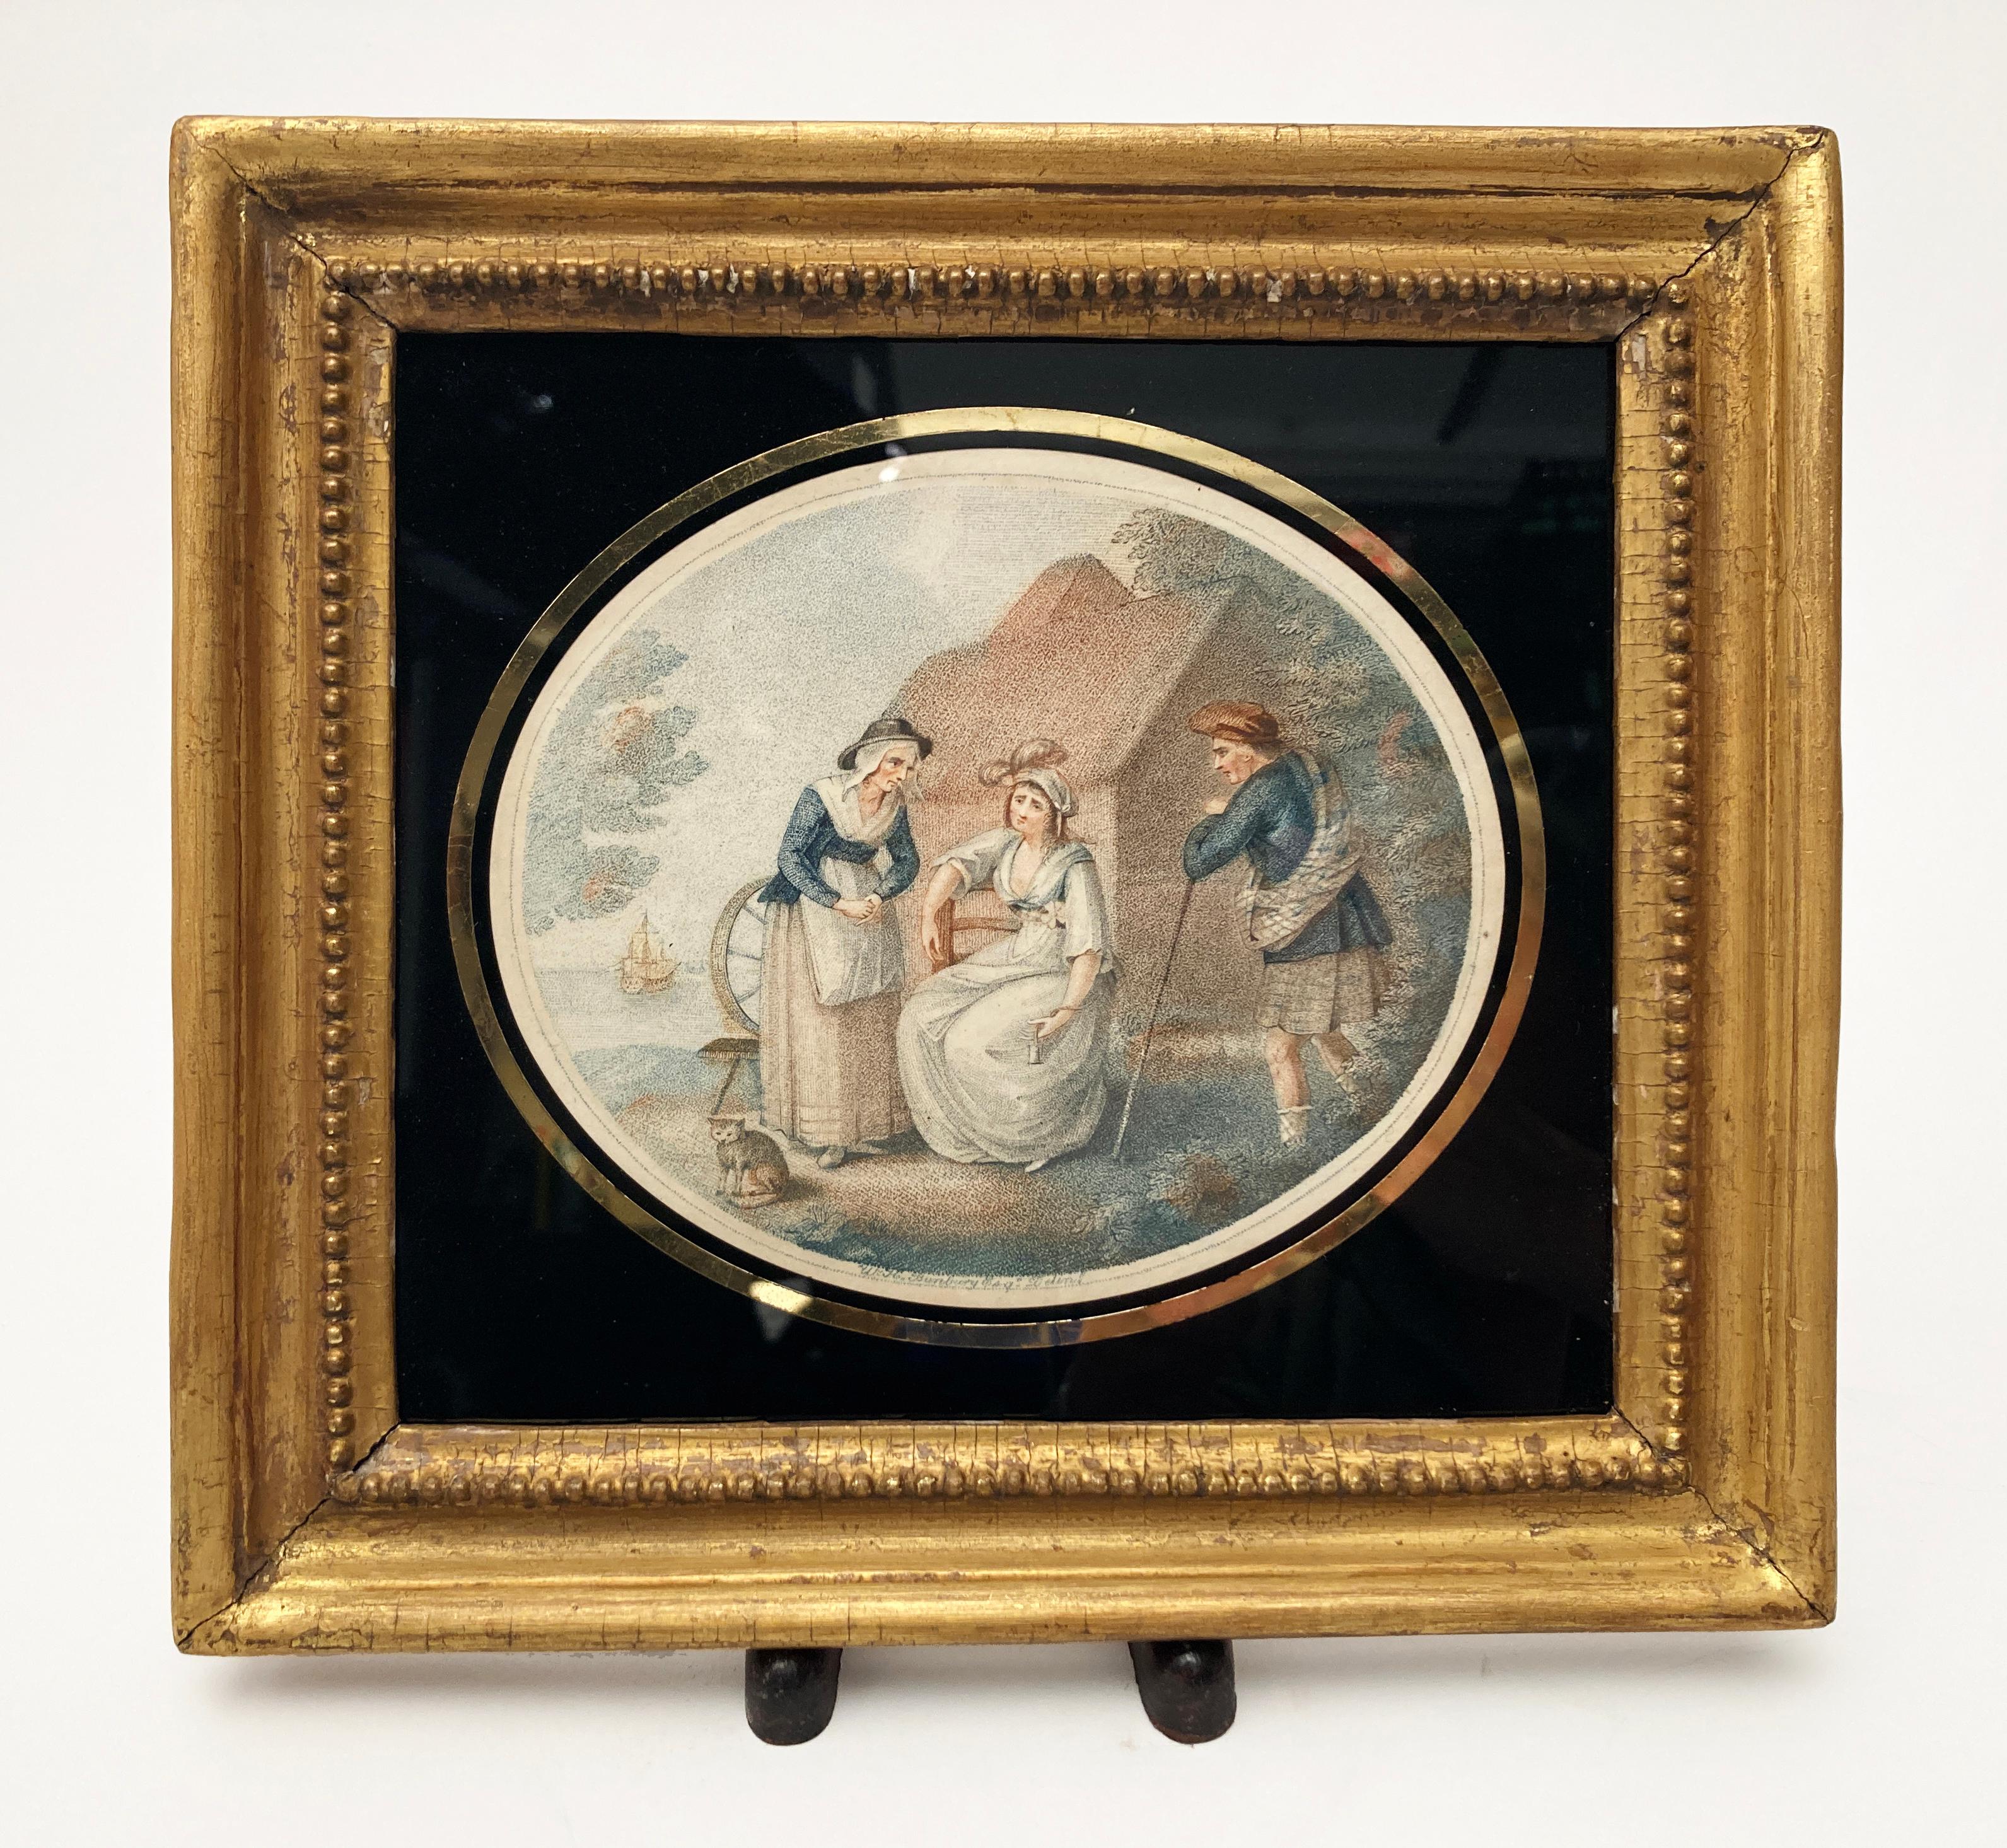 Es handelt sich um außergewöhnlich Seltene Farbdrucke nach Originalen des Künstlers Henry William Bunbury (1750-1811), die von Francesco Bartolozzi gestochen wurden. Beide Drucke wurden in der Technik des Stippings hergestellt. Diese Stücke wurden